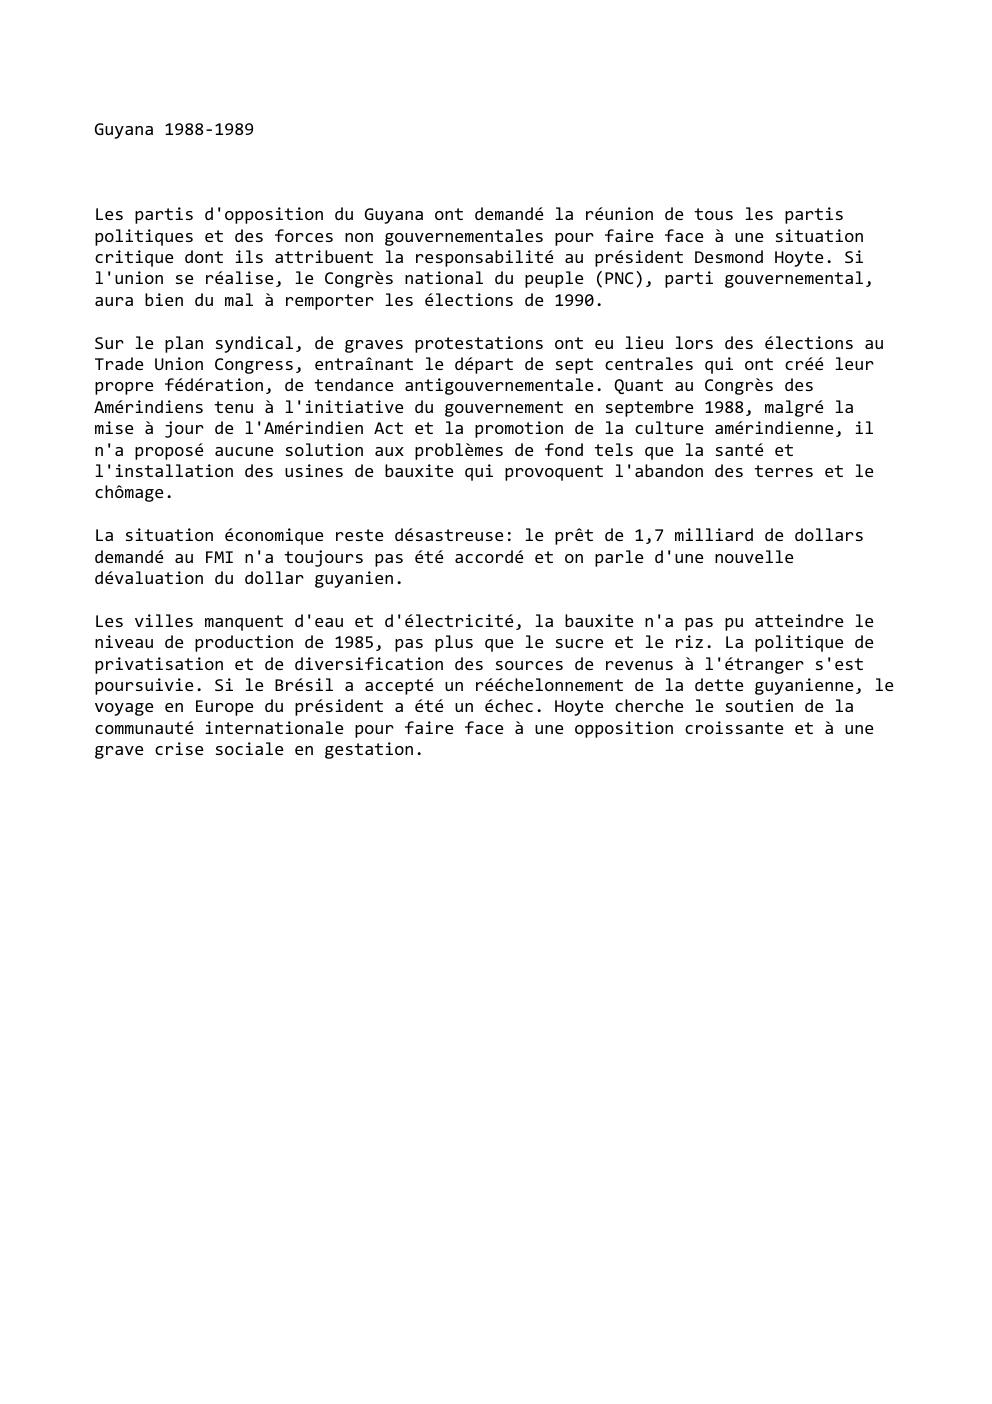 Prévisualisation du document Guyana 1988-1989

Les partis d'opposition du Guyana ont demandé la réunion de tous les partis
politiques et des forces non...